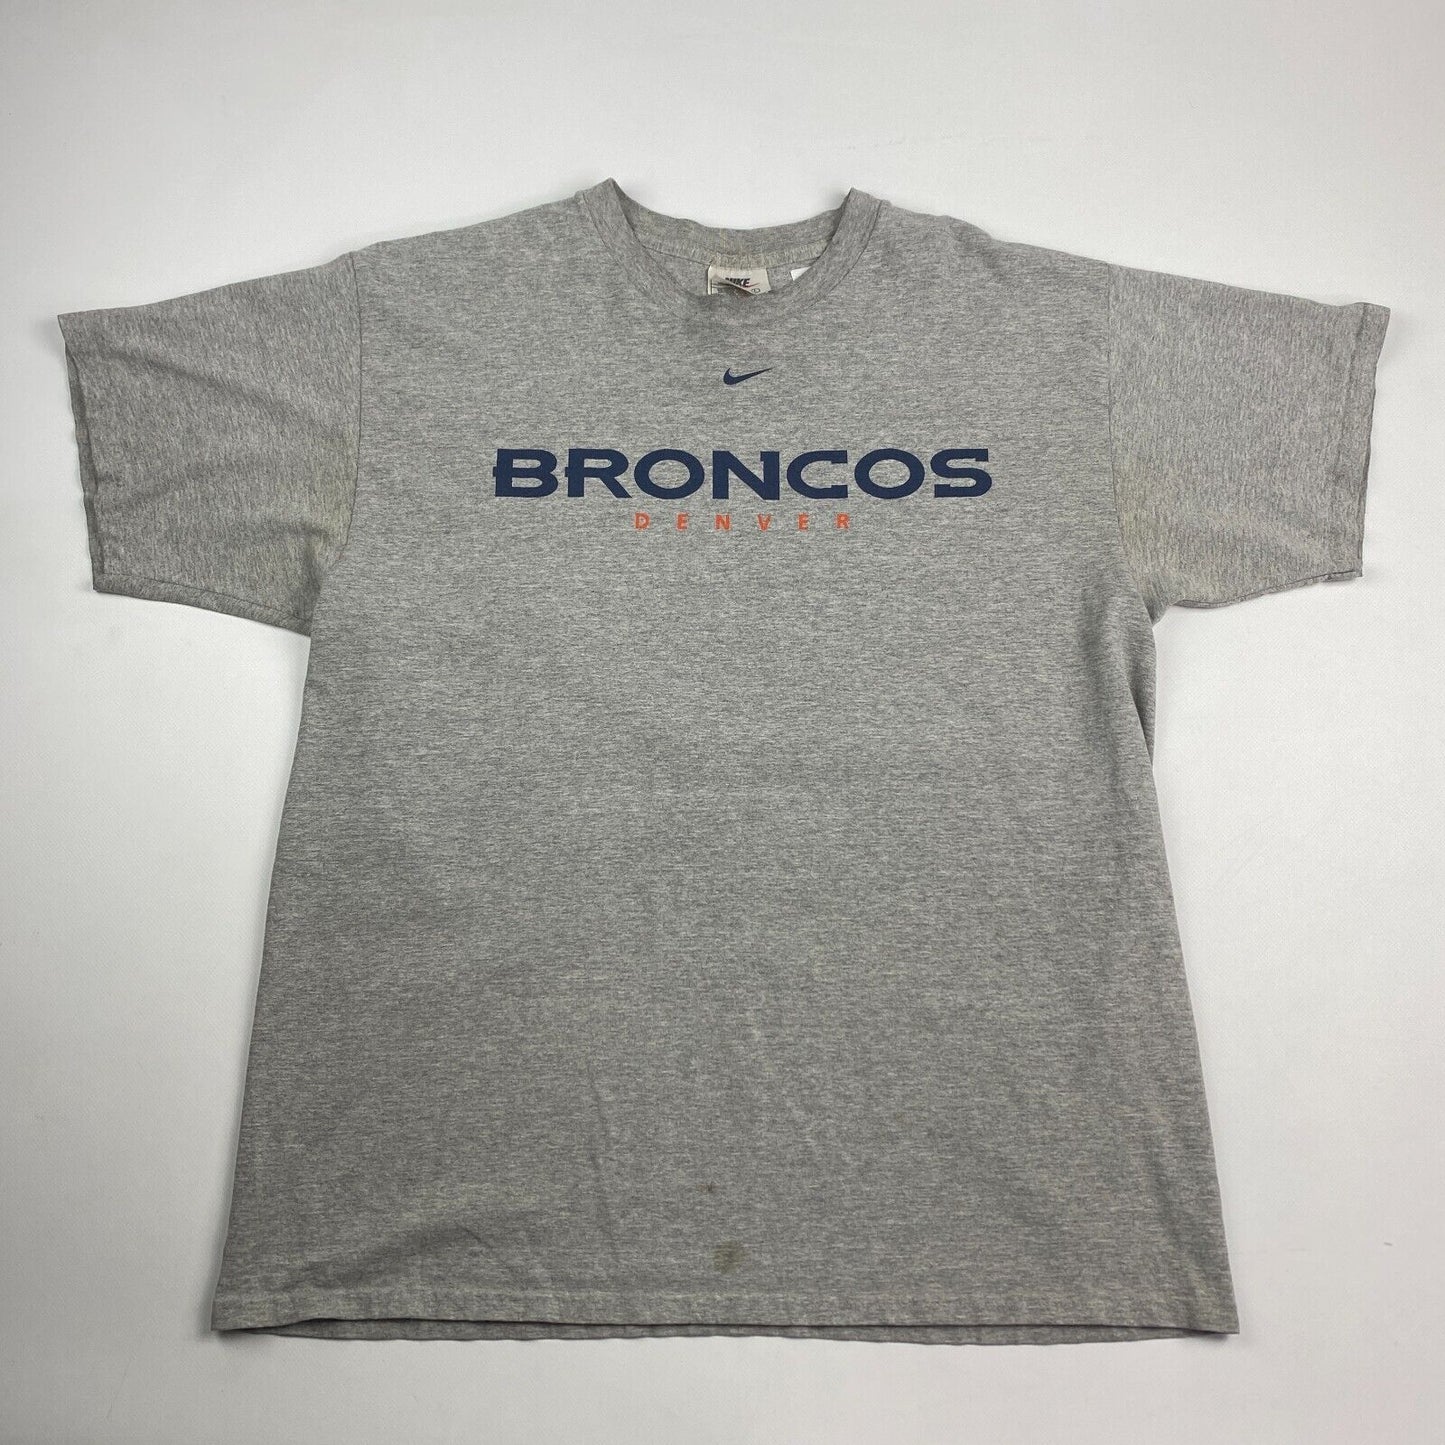 VINTAGE 90s NIKE Mid Swoosh Denver Broncos Grey T-Shirt sz Large Men